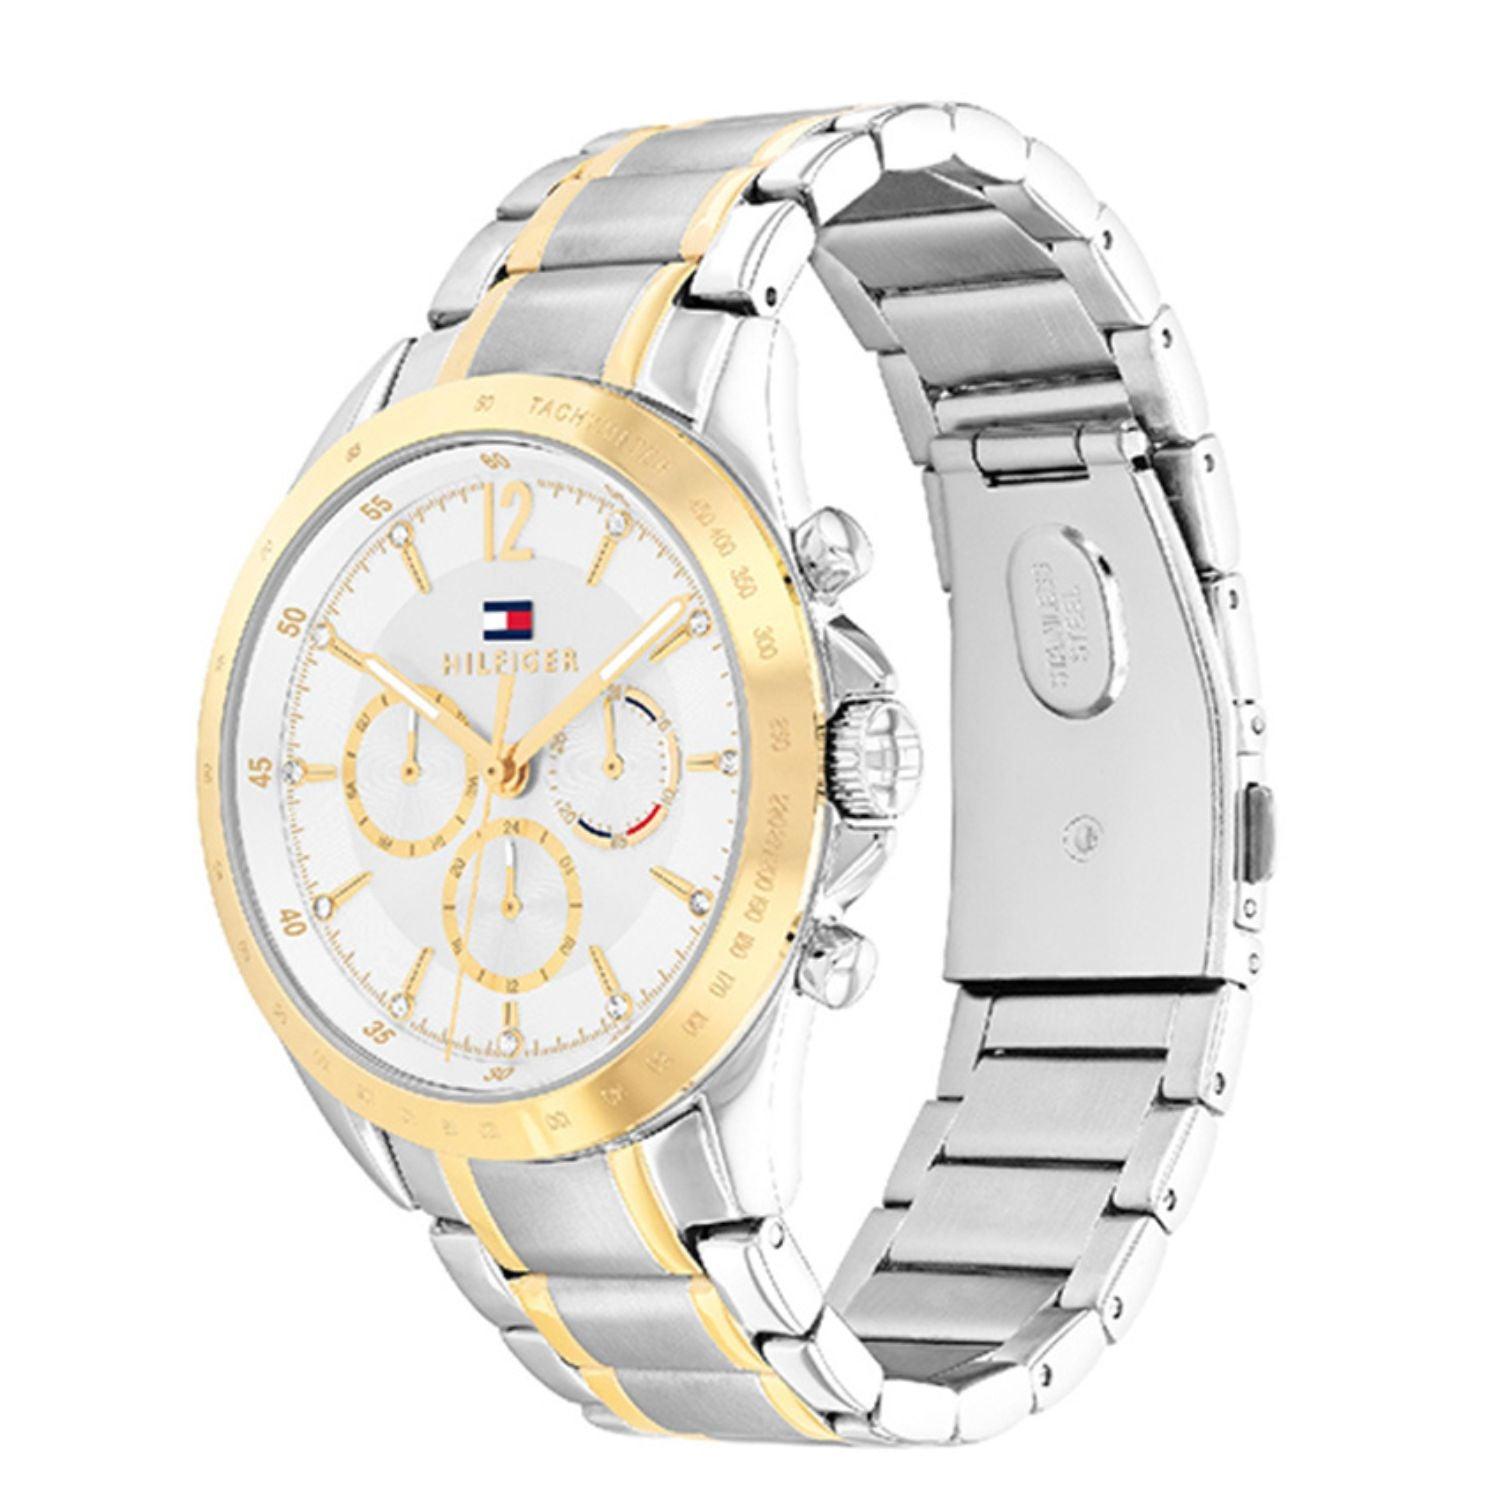 Γυναικείο ρολόι Tommy Hilfiger Kenzie 1782555 με δίχρωμο ασημί-χρυσό ατσάλινο μπρασελέ και άσπρο καντράν διαμέτρου 40mm με ζιργκόν.